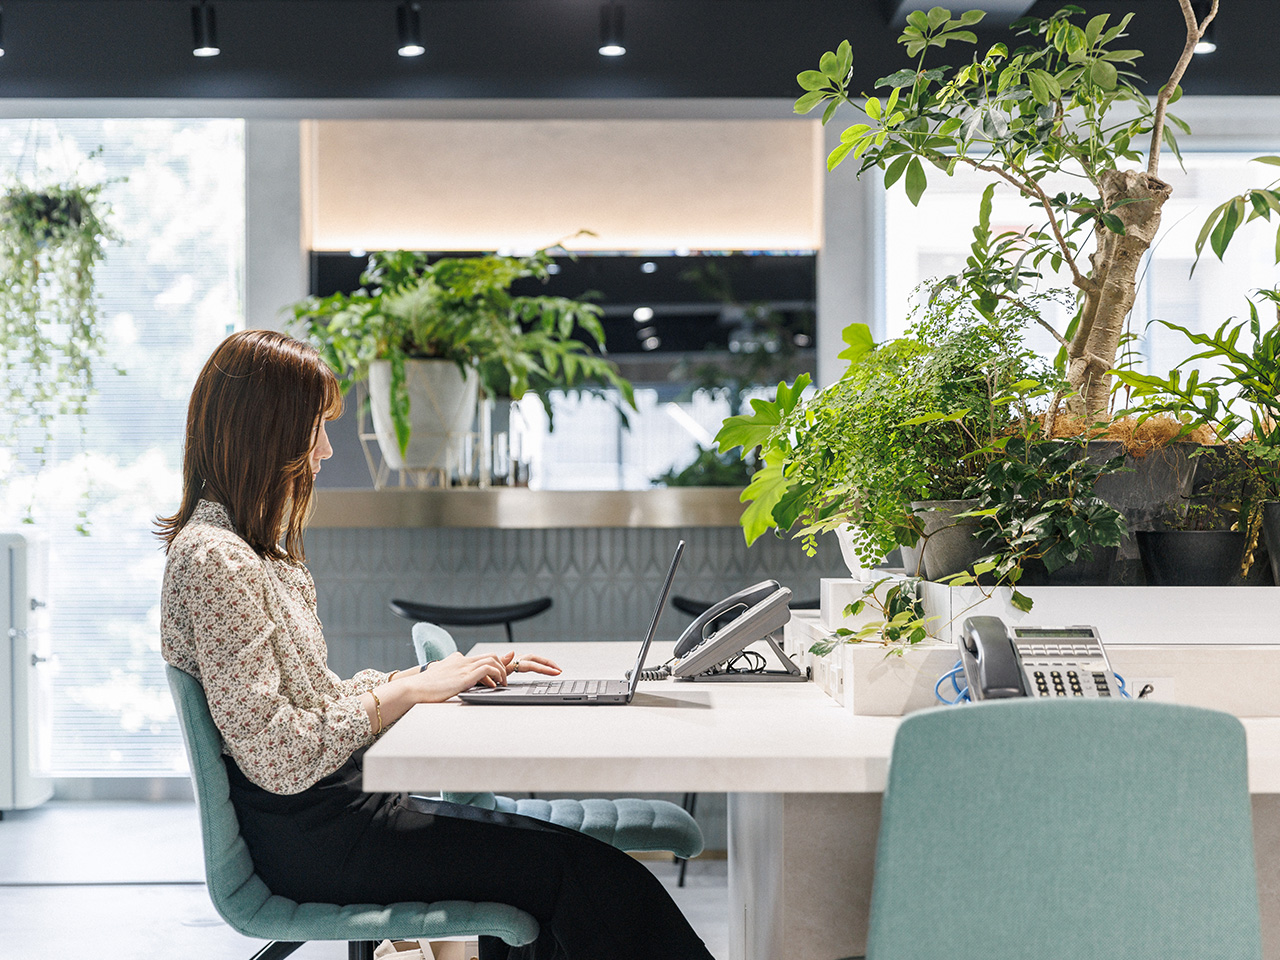 オフィスには緑が多く、雰囲気は抜群。社員が働きやすくなるように最大限考慮されている。